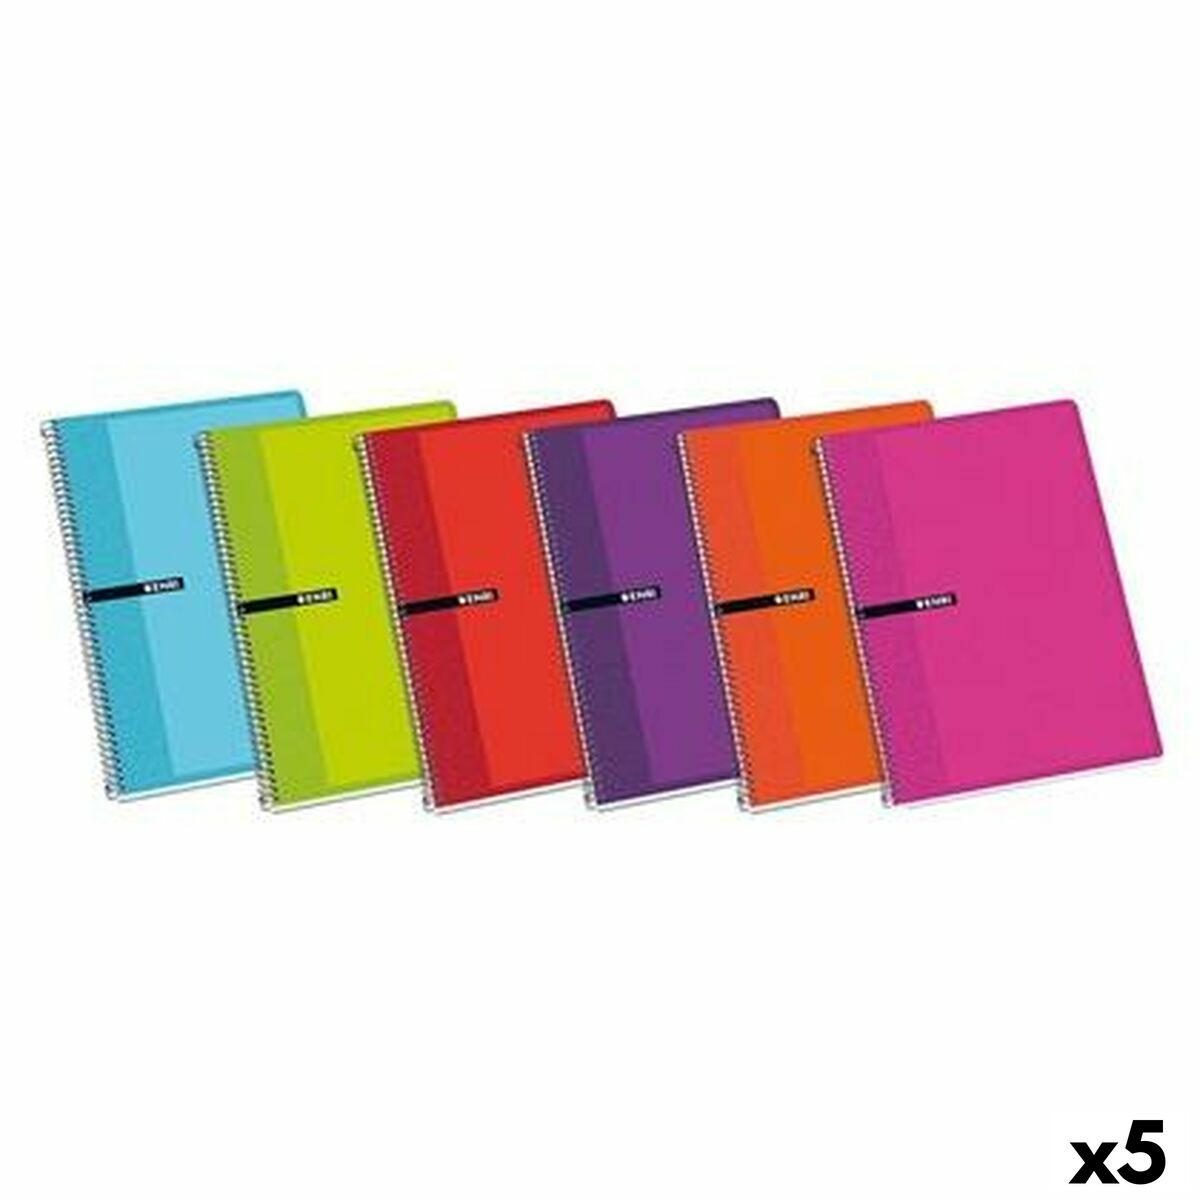 Notebook ENRI Multicolor 80 Frunze Din A4 (5 Unități)